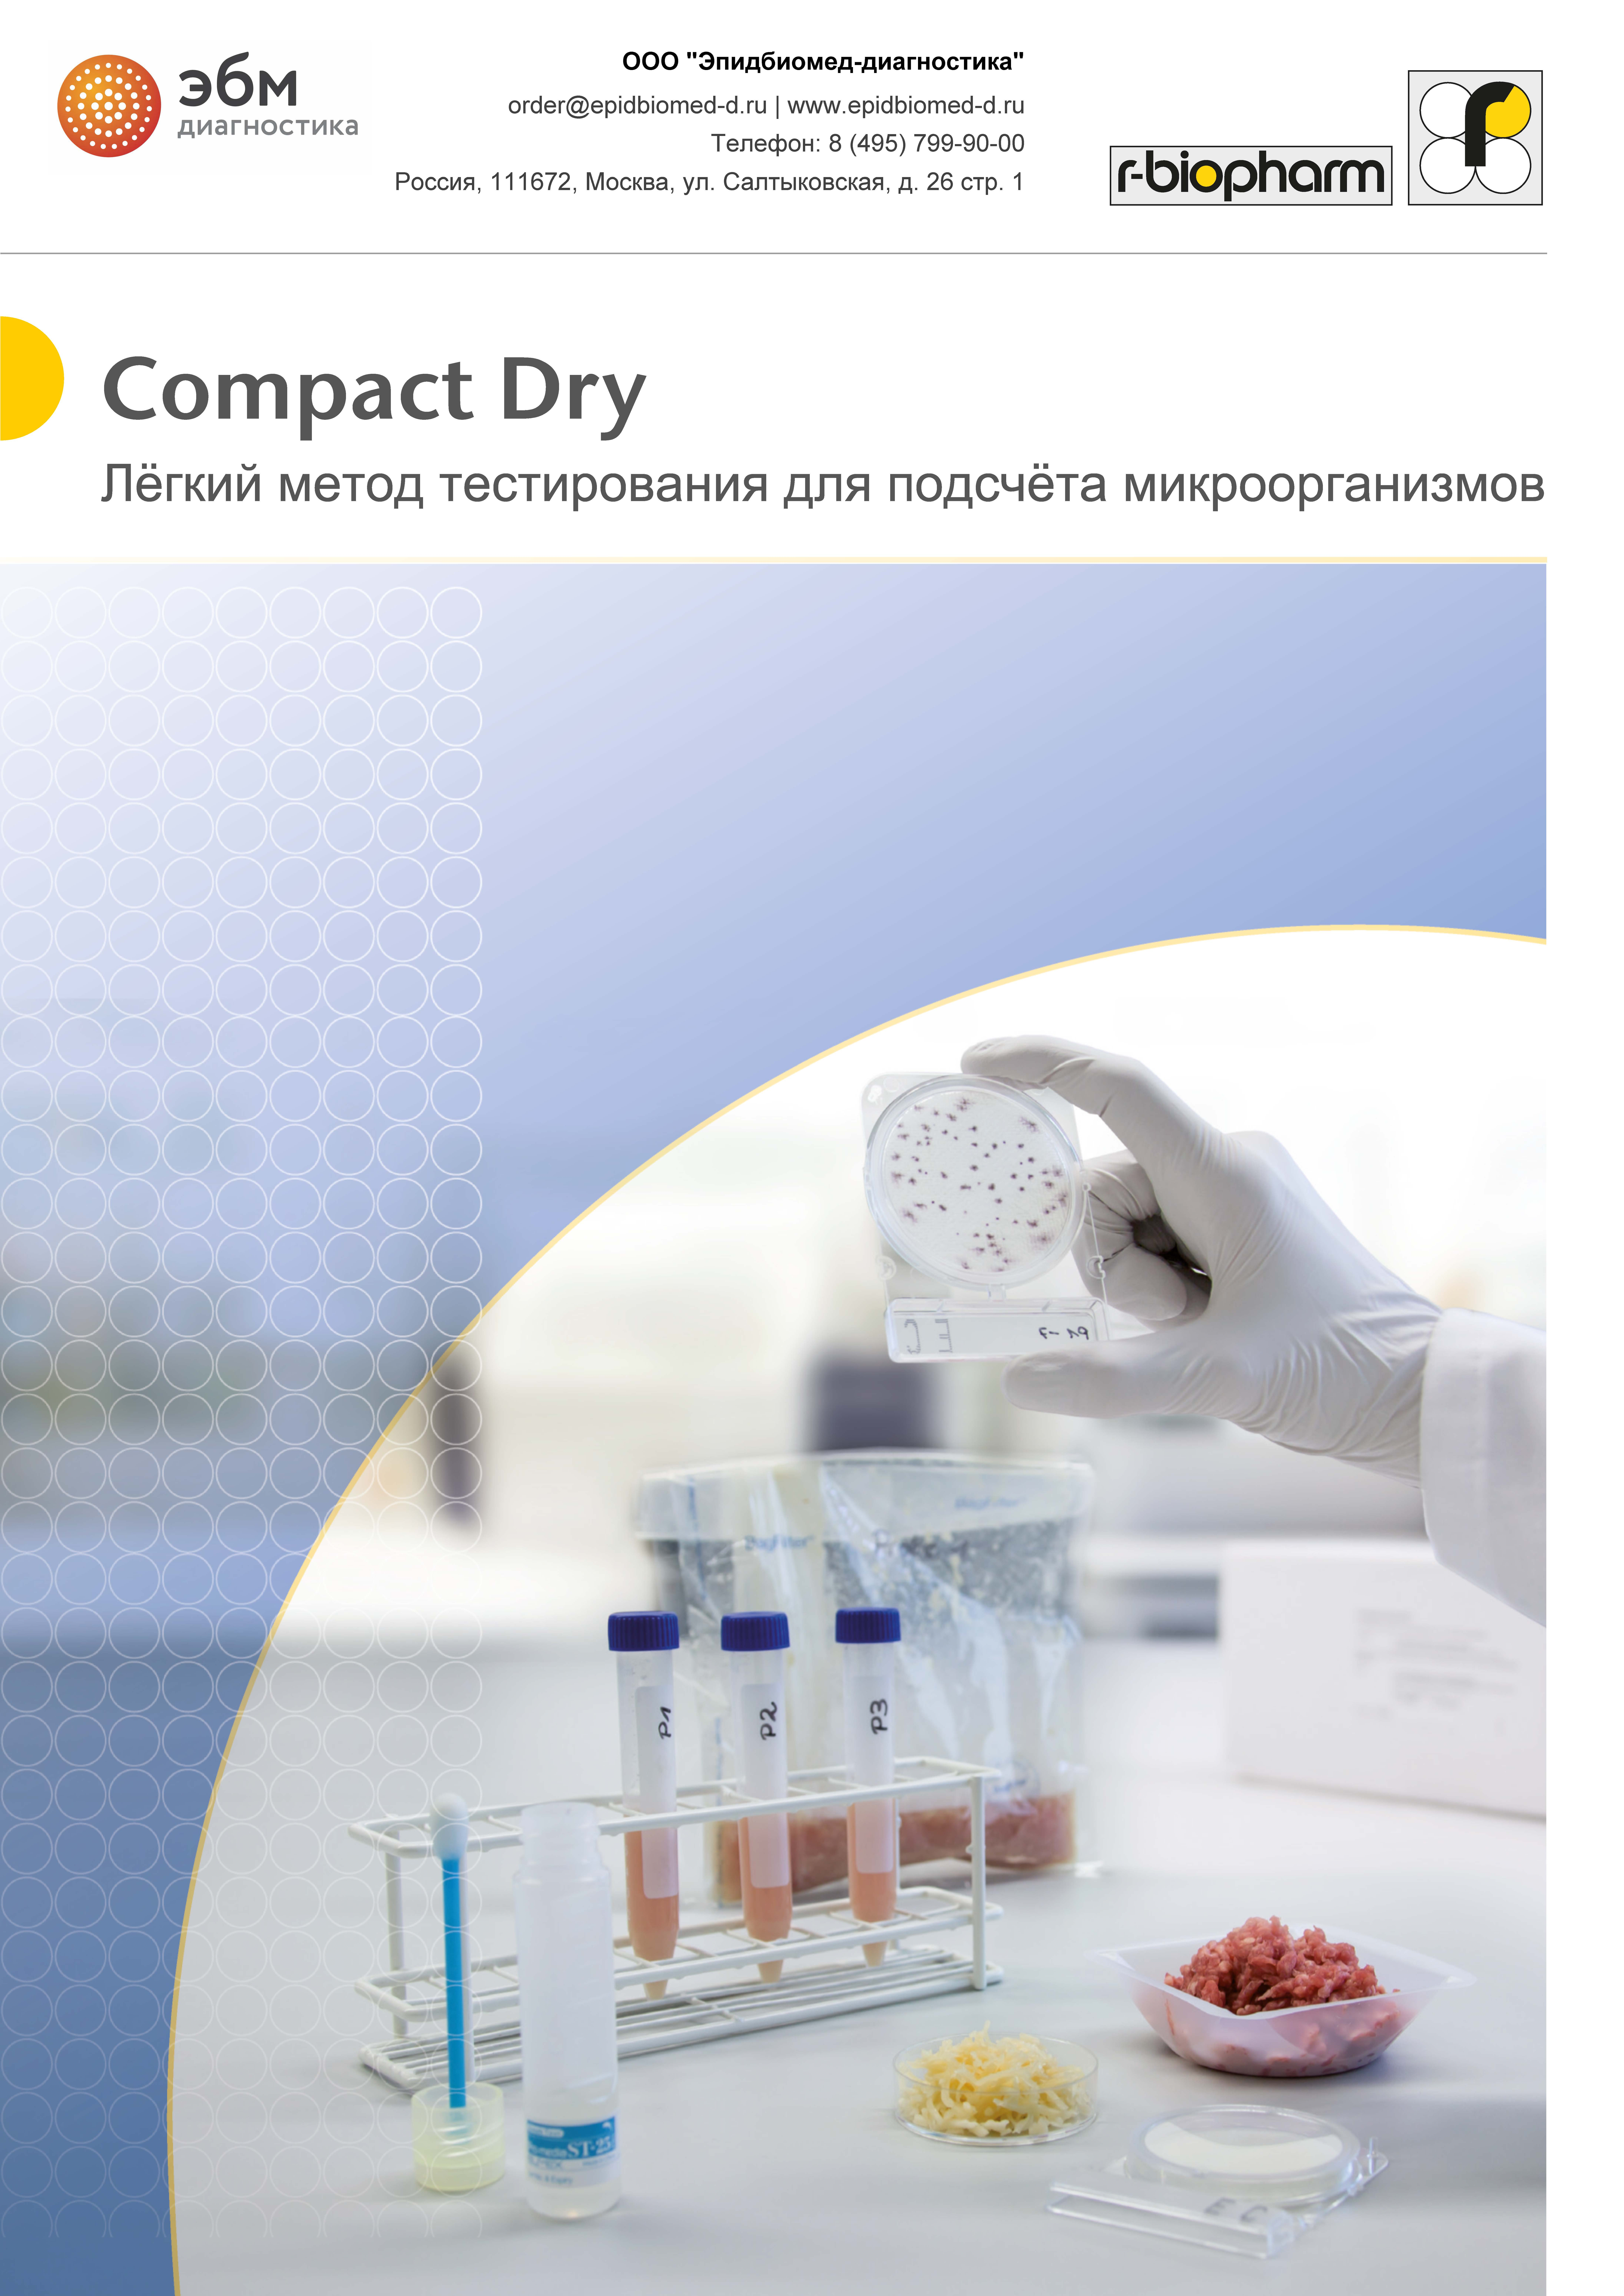 Тест-системы для подсчета микроорганизмов Compact Dry